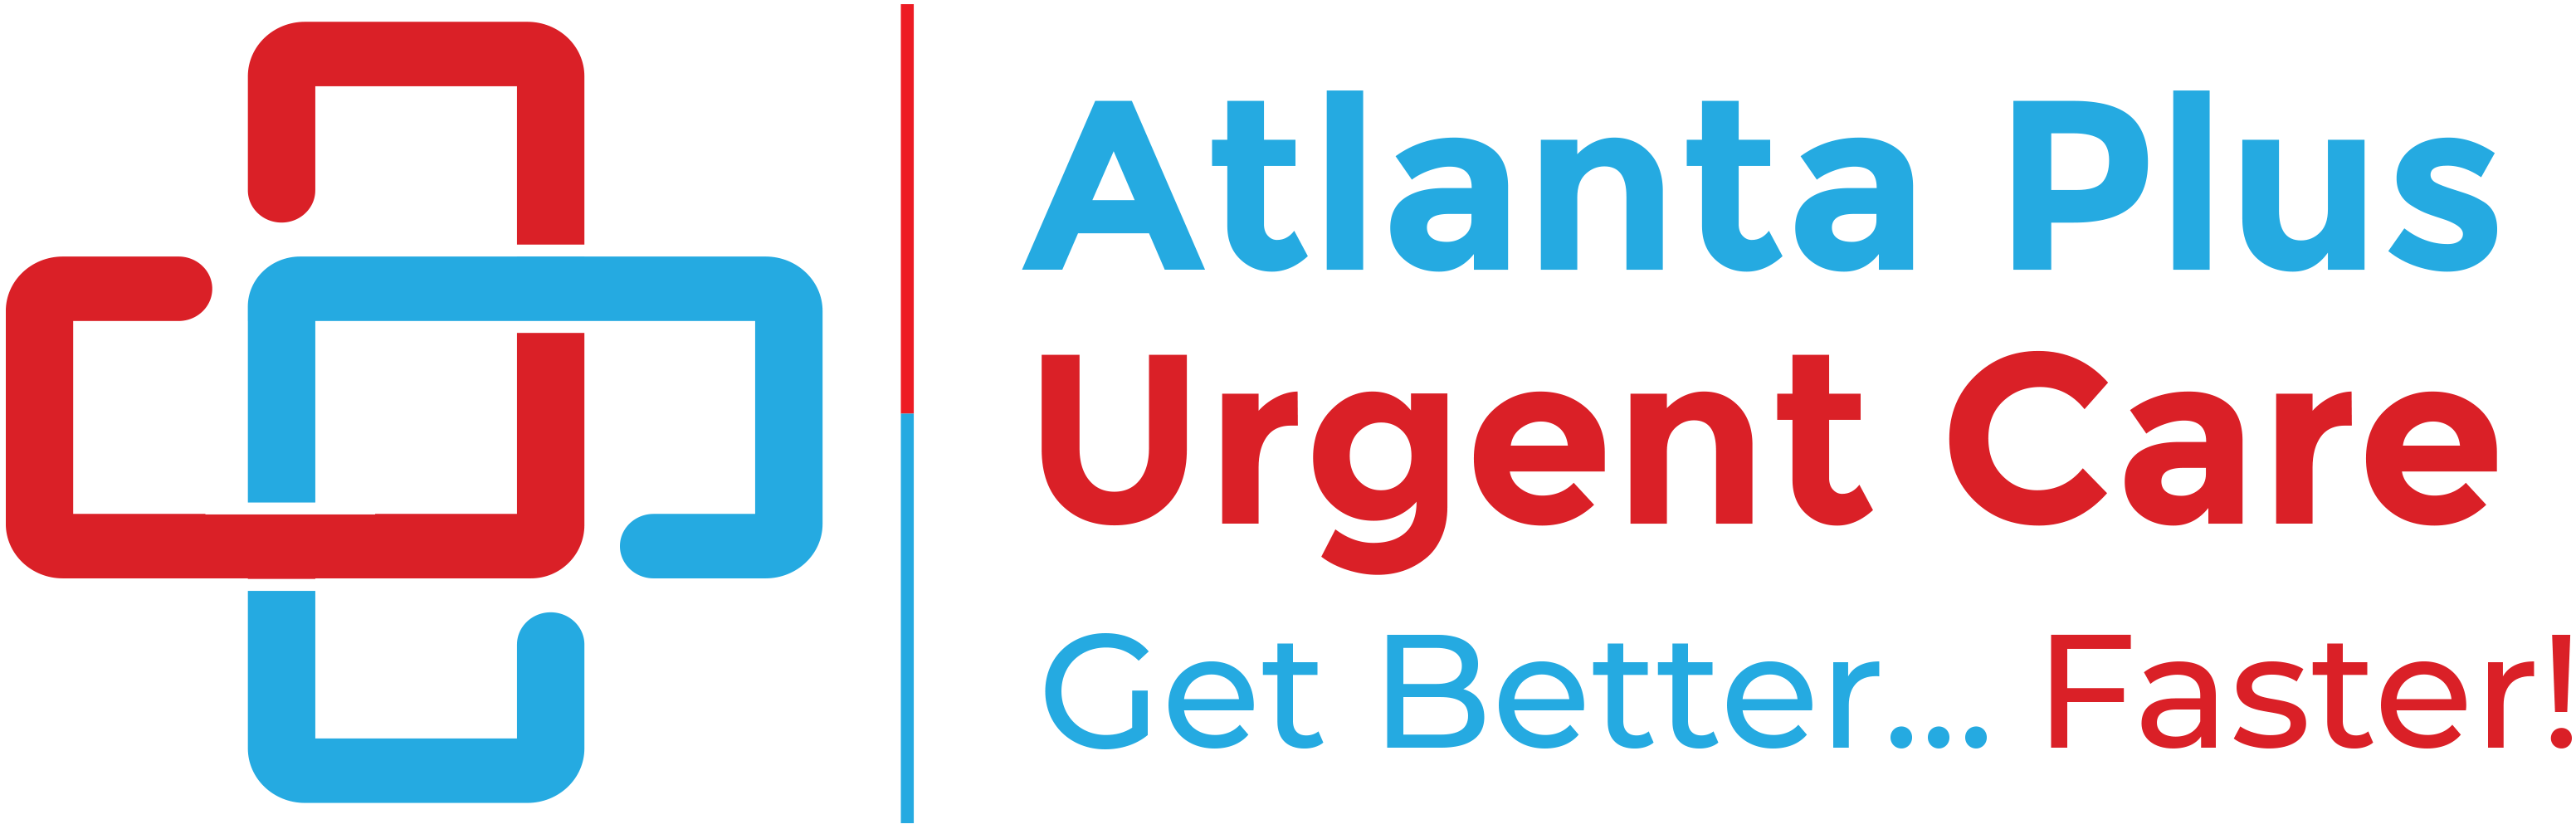 Atlanta Plus Urgent Care - Norcross Logo